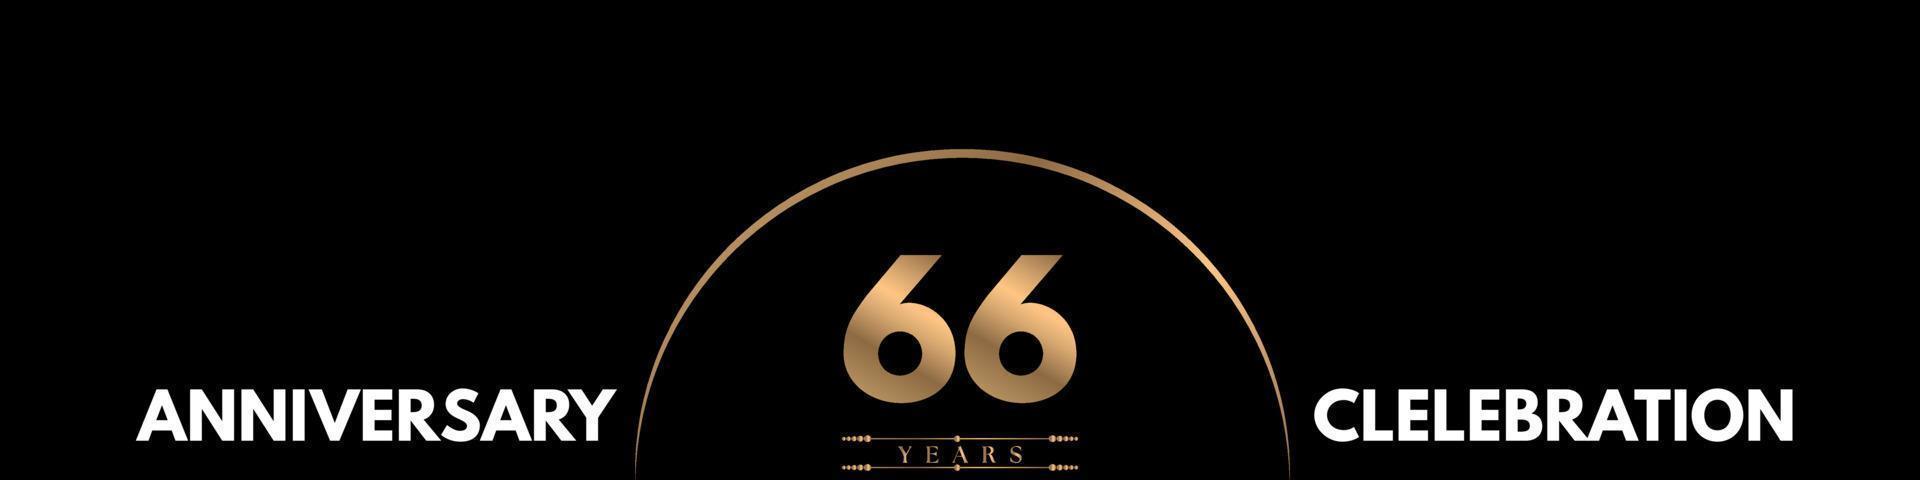 Celebrazione dell'anniversario di 66 anni con numero elegante isolato su sfondo nero. disegno vettoriale per biglietto di auguri, festa di compleanno, matrimonio, festa evento, cerimonia, biglietto d'invito.